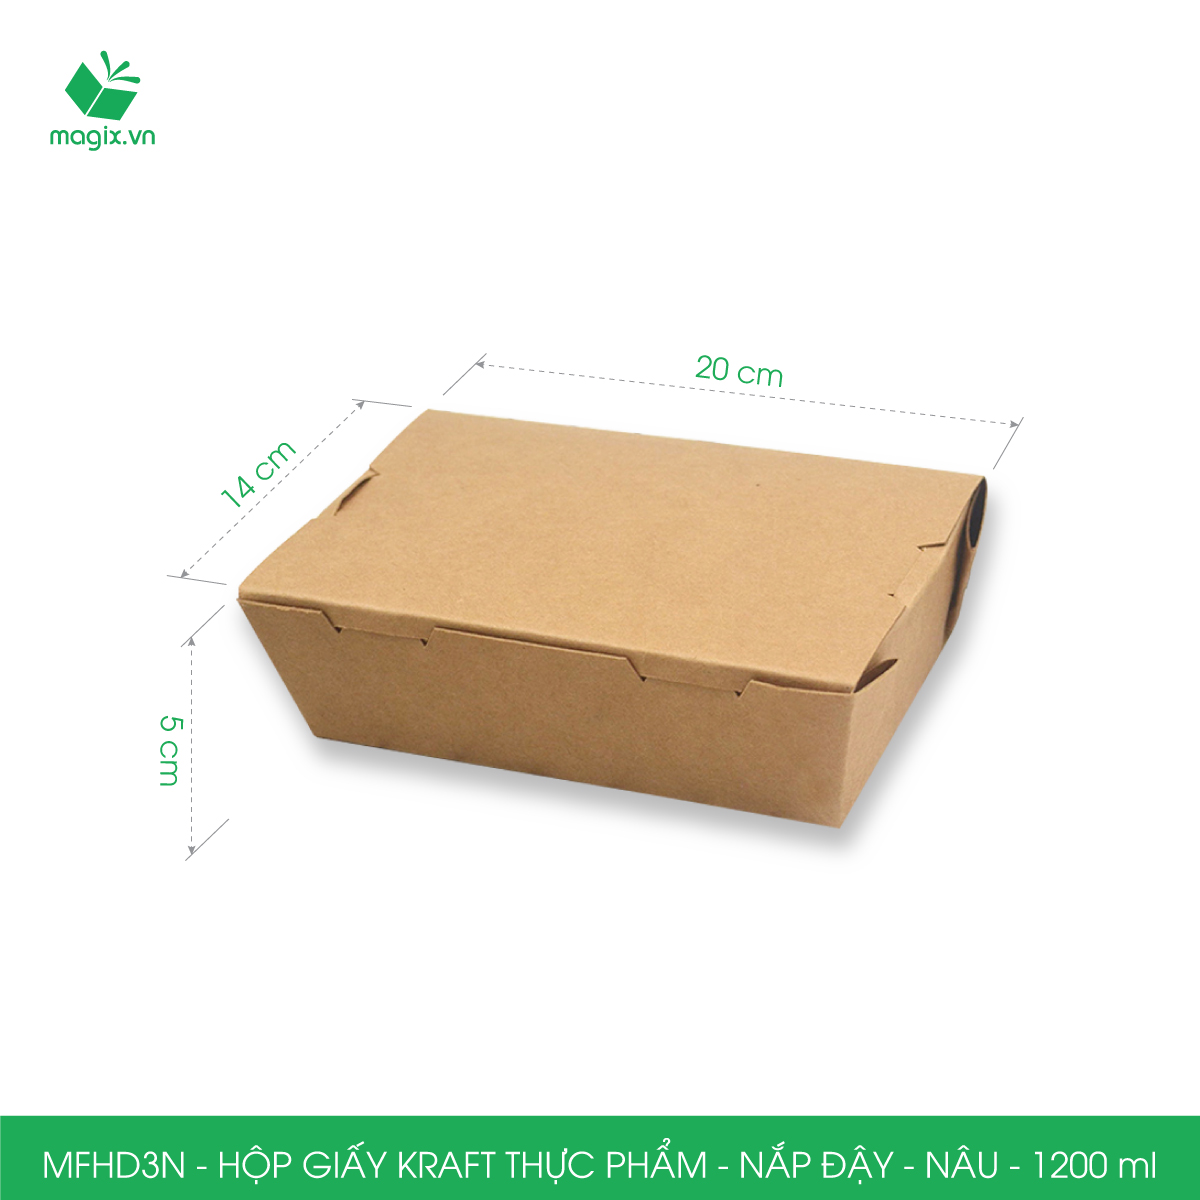 MFHD3N - Combo 50 hộp giấy kraft thực phẩm 1200ml, hộp đựng thức ăn nắp đậy màu nâu, hộp gói đồ ăn mang đi